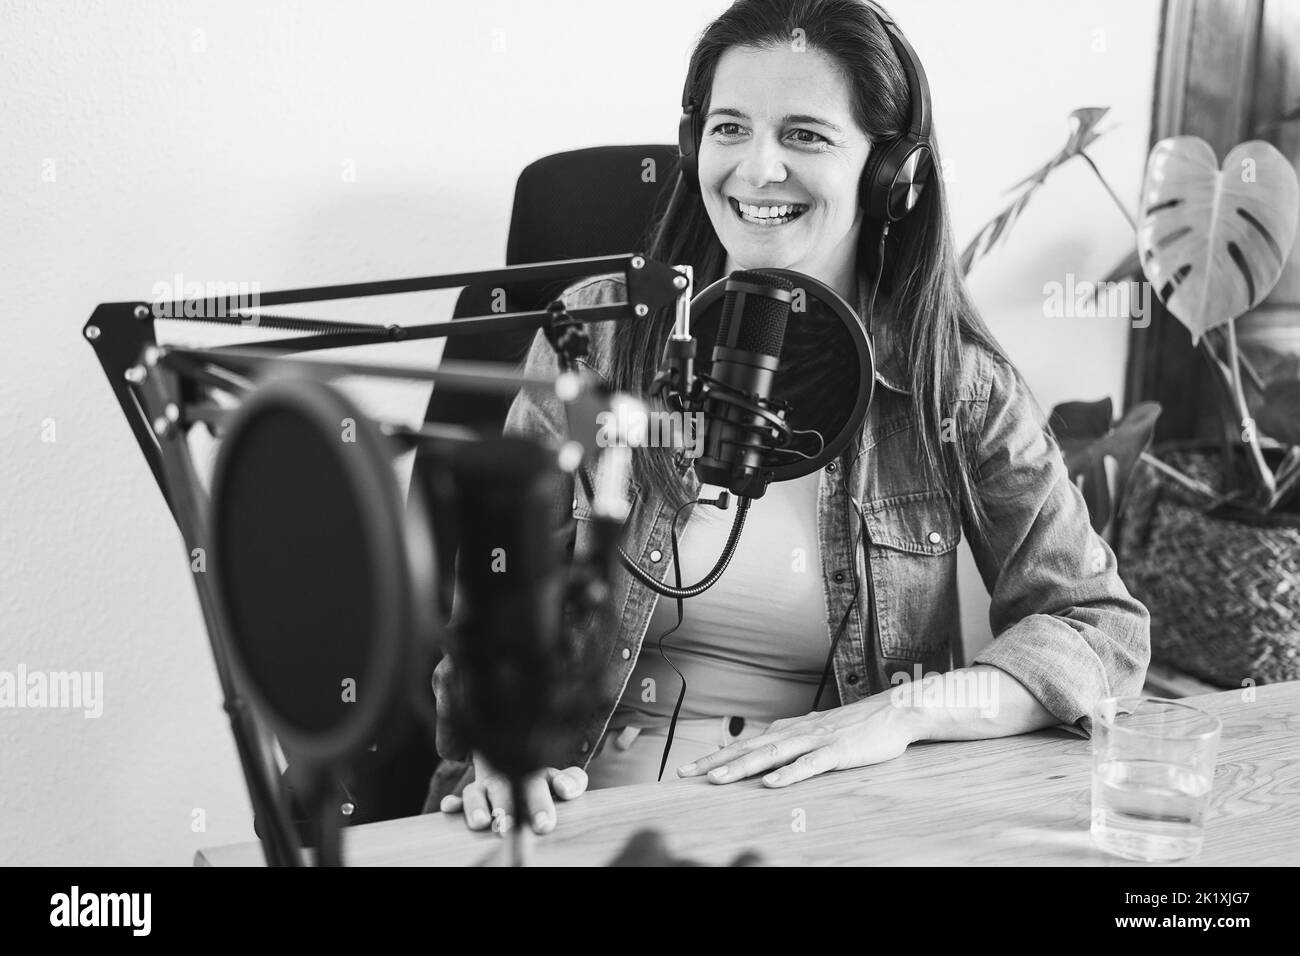 Hôtes ayant une session de podcast ensemble - intervenant féminin faisant un entretien pendant le flux en direct - montage en noir et blanc Banque D'Images